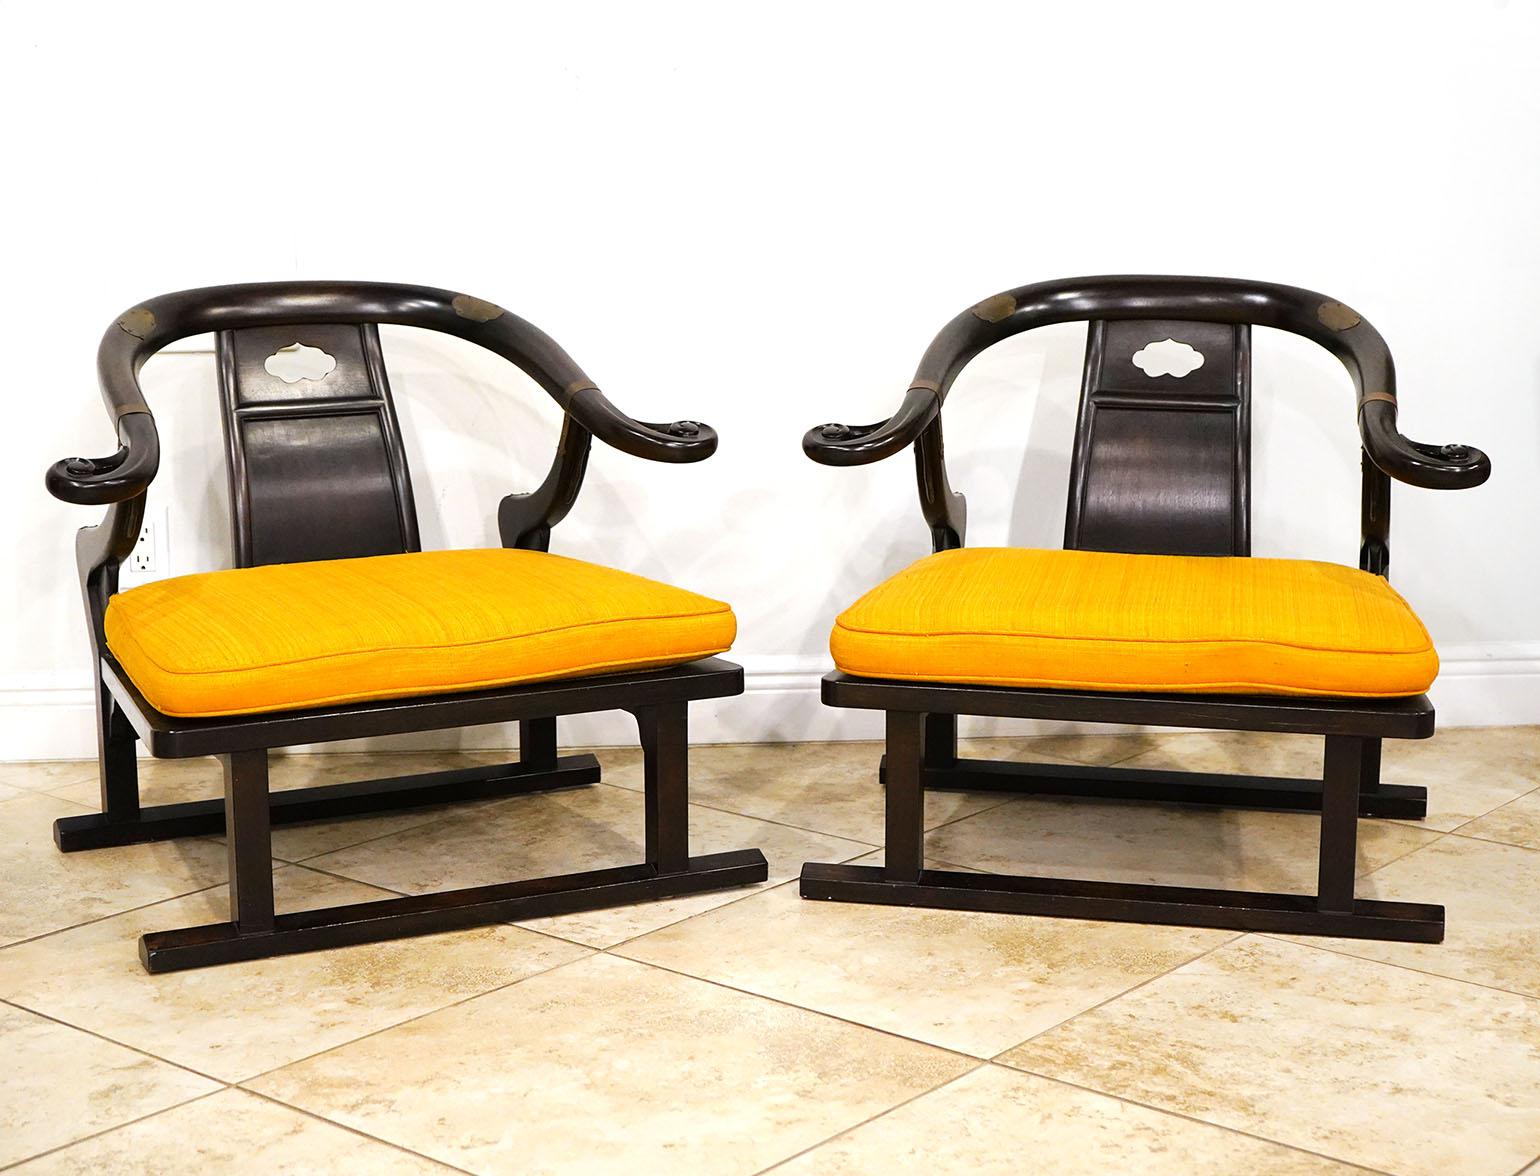 Ein Paar Loungesessel im chinesischen Stil von Baker Furniture, entworfen von Michael Taylor. Dunkelbraunes Holz mit Messingakzenten. Label auf der Unterseite. Hufeisen-Design.